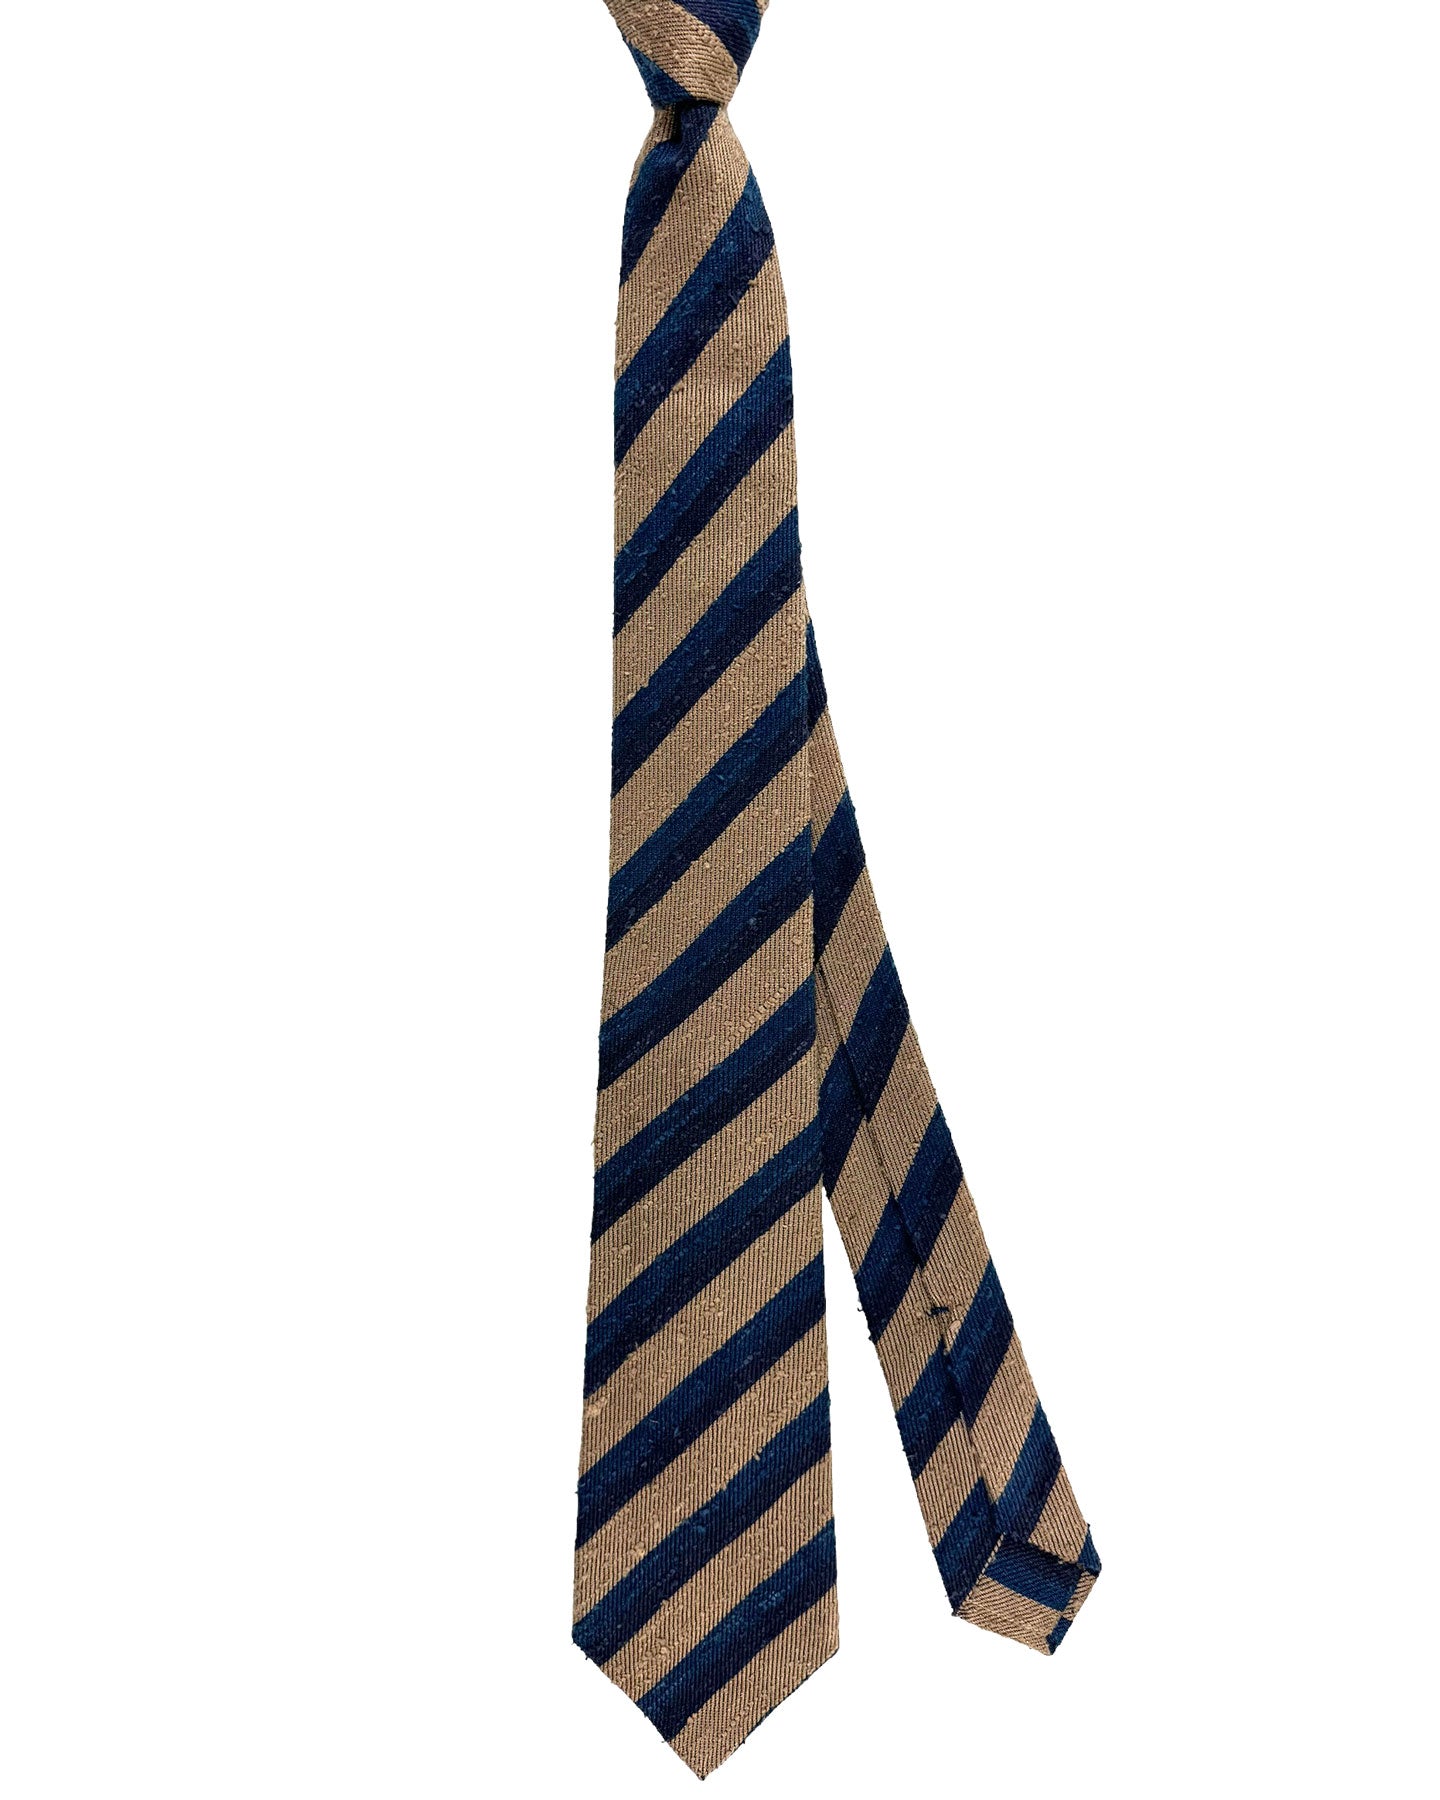 Kiton Silk Tie Coffee Brown Midnight Blue Stripes Design - Sevenfold Necktie